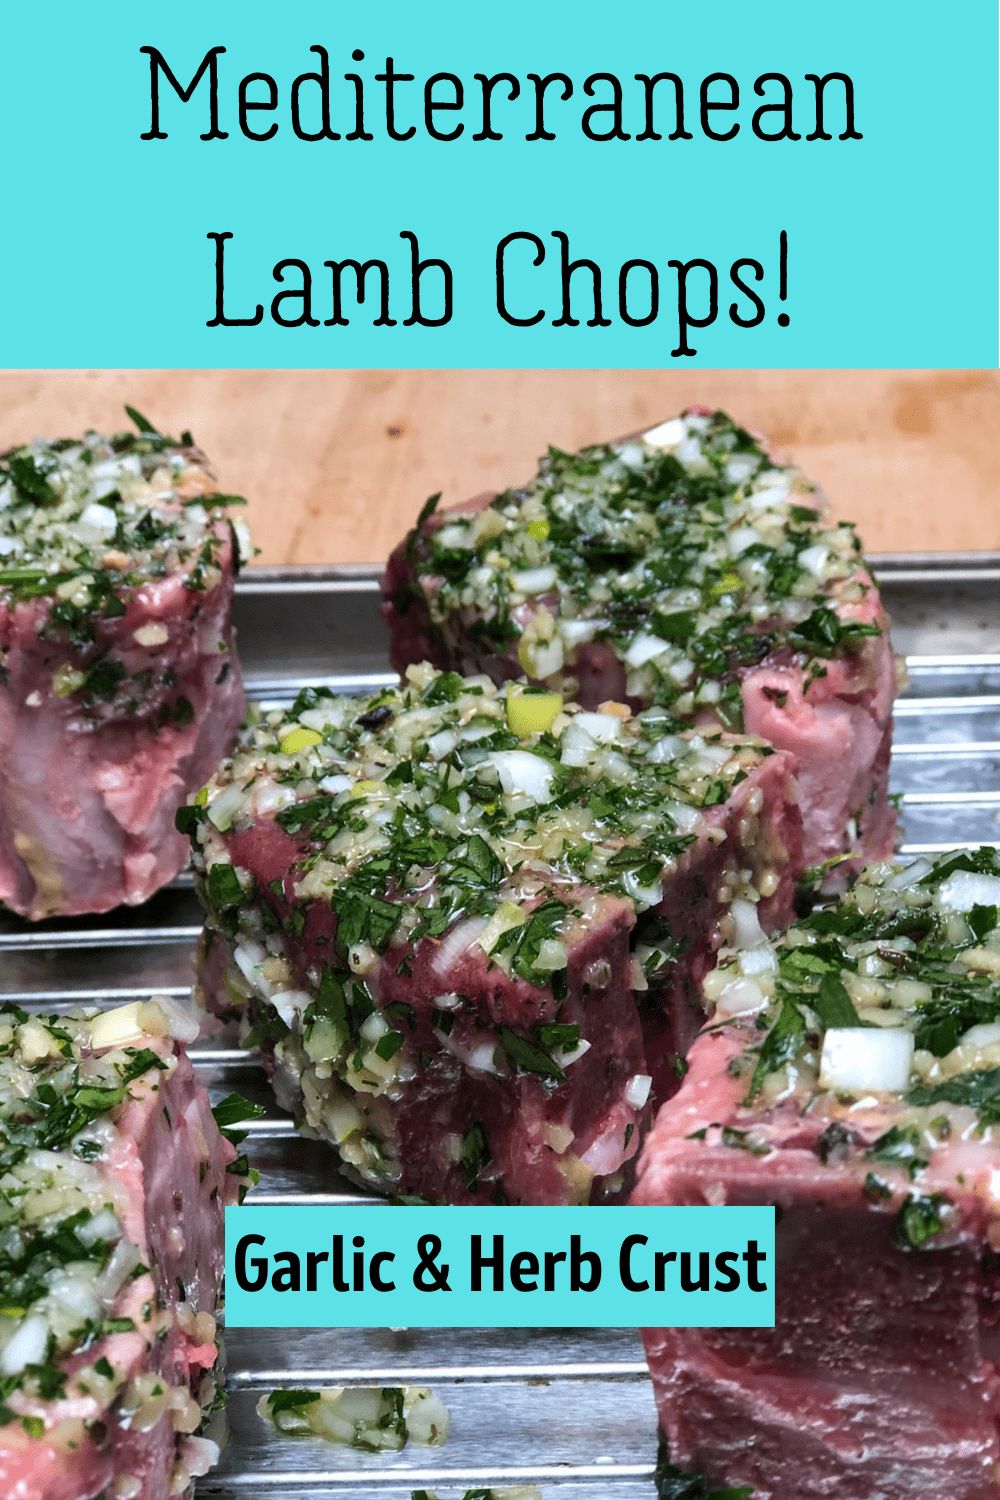 Pin for Mediterranean lamb chops